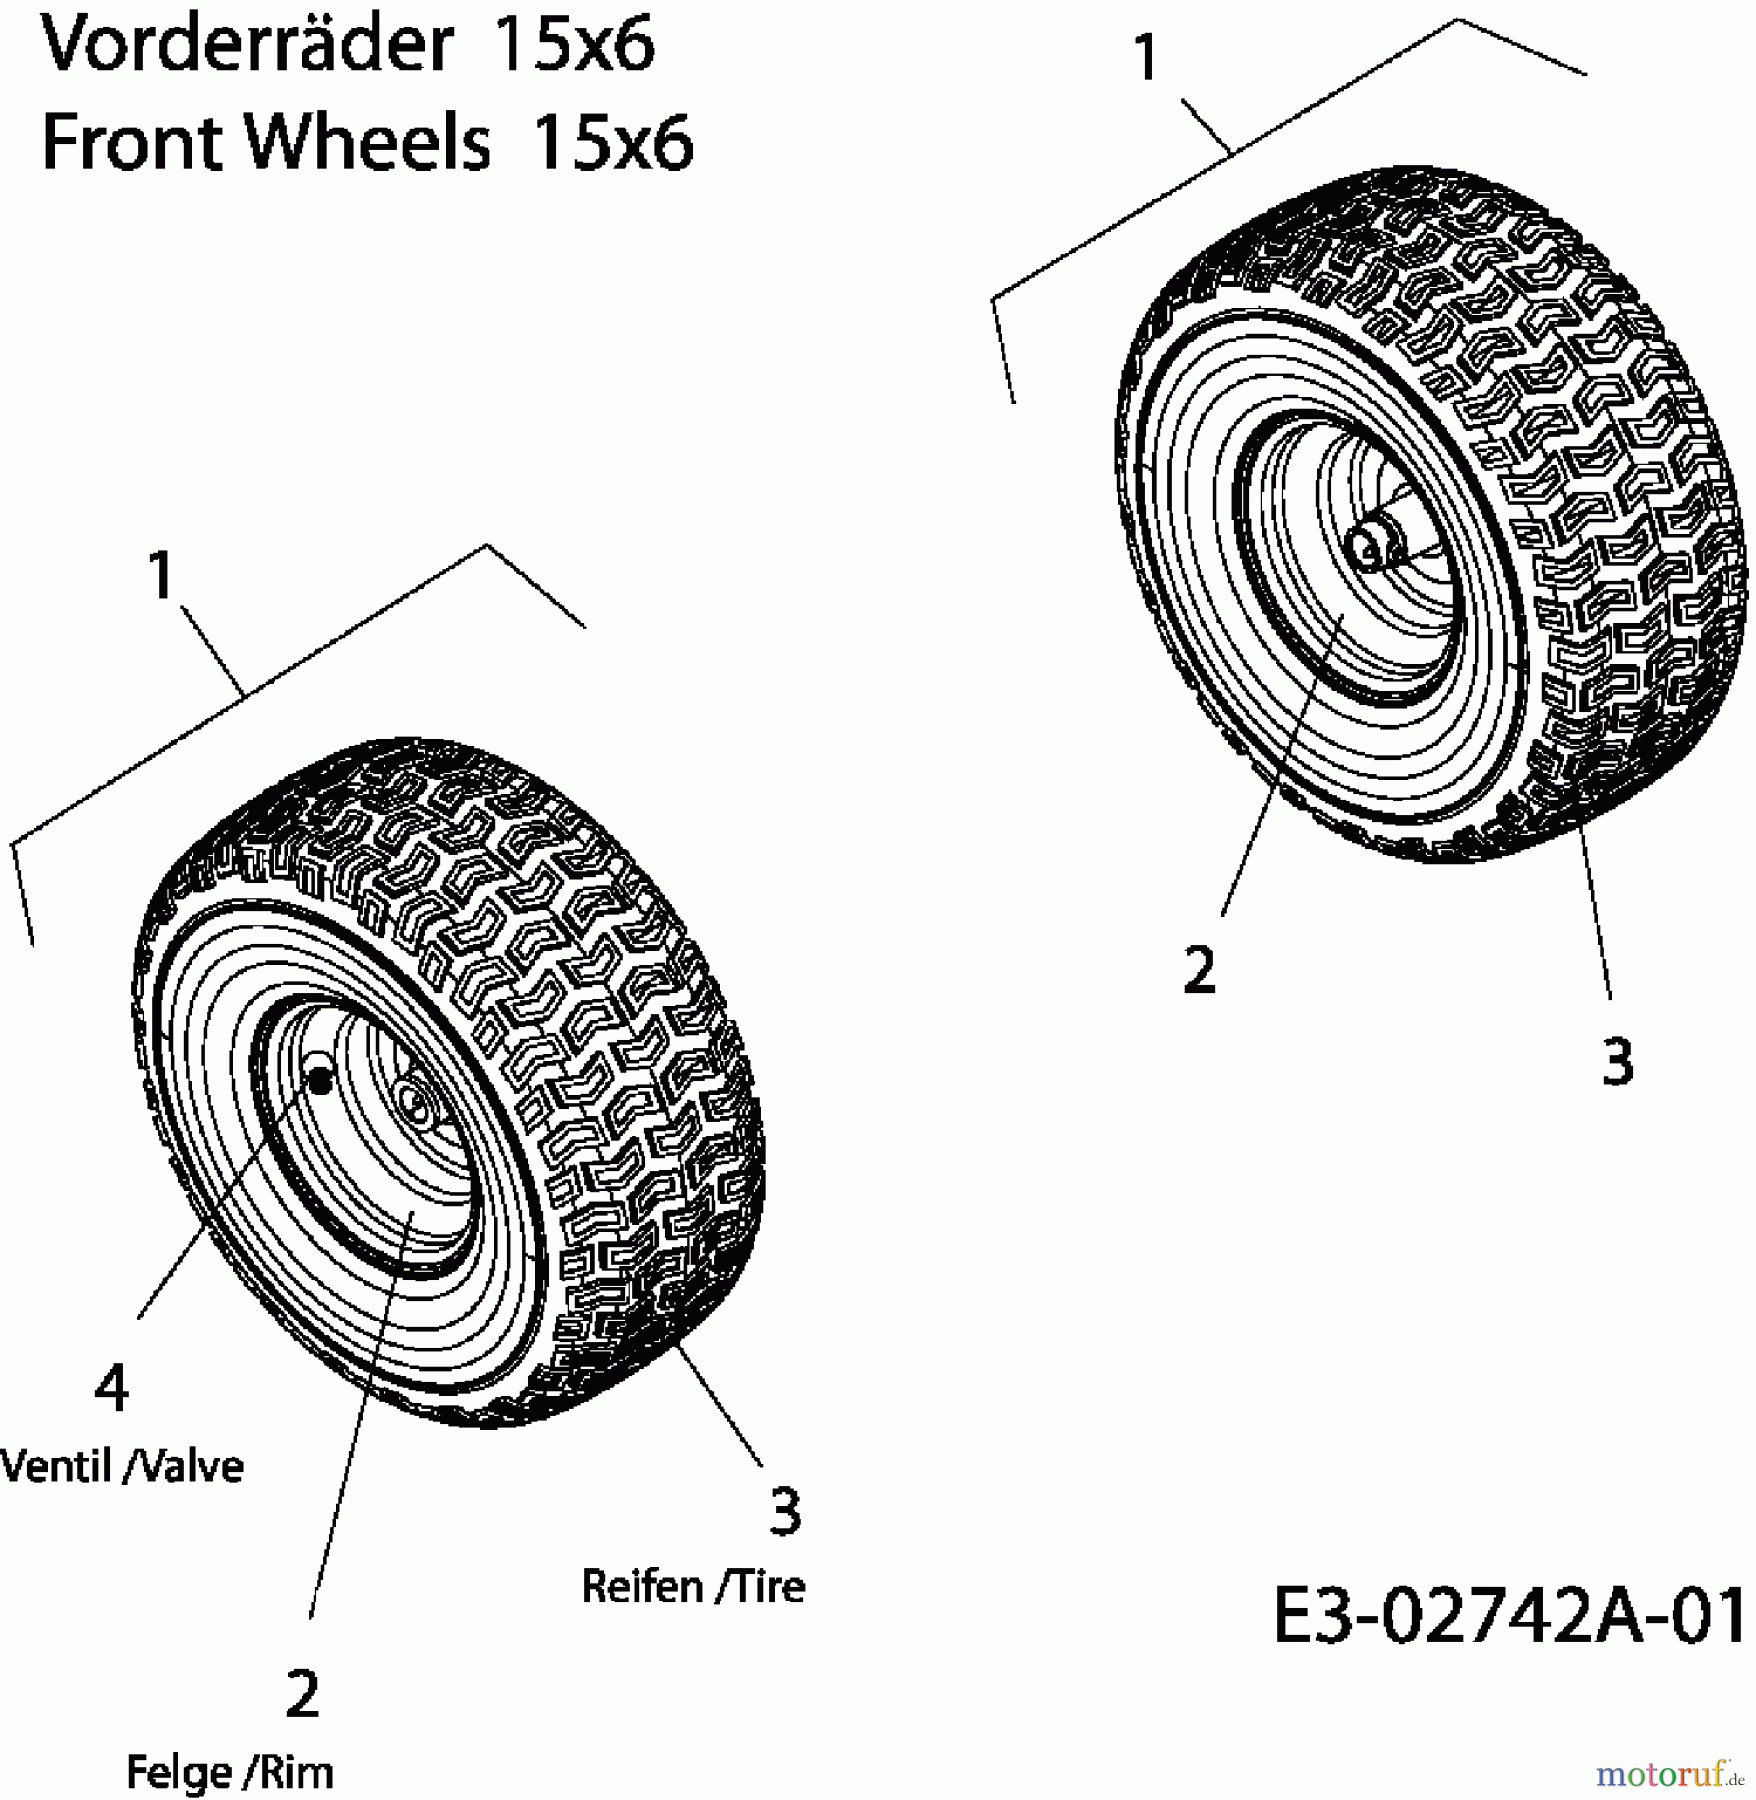  Bolens Lawn tractors BL 175/107 T 13A3761G684  (2006) Front wheels